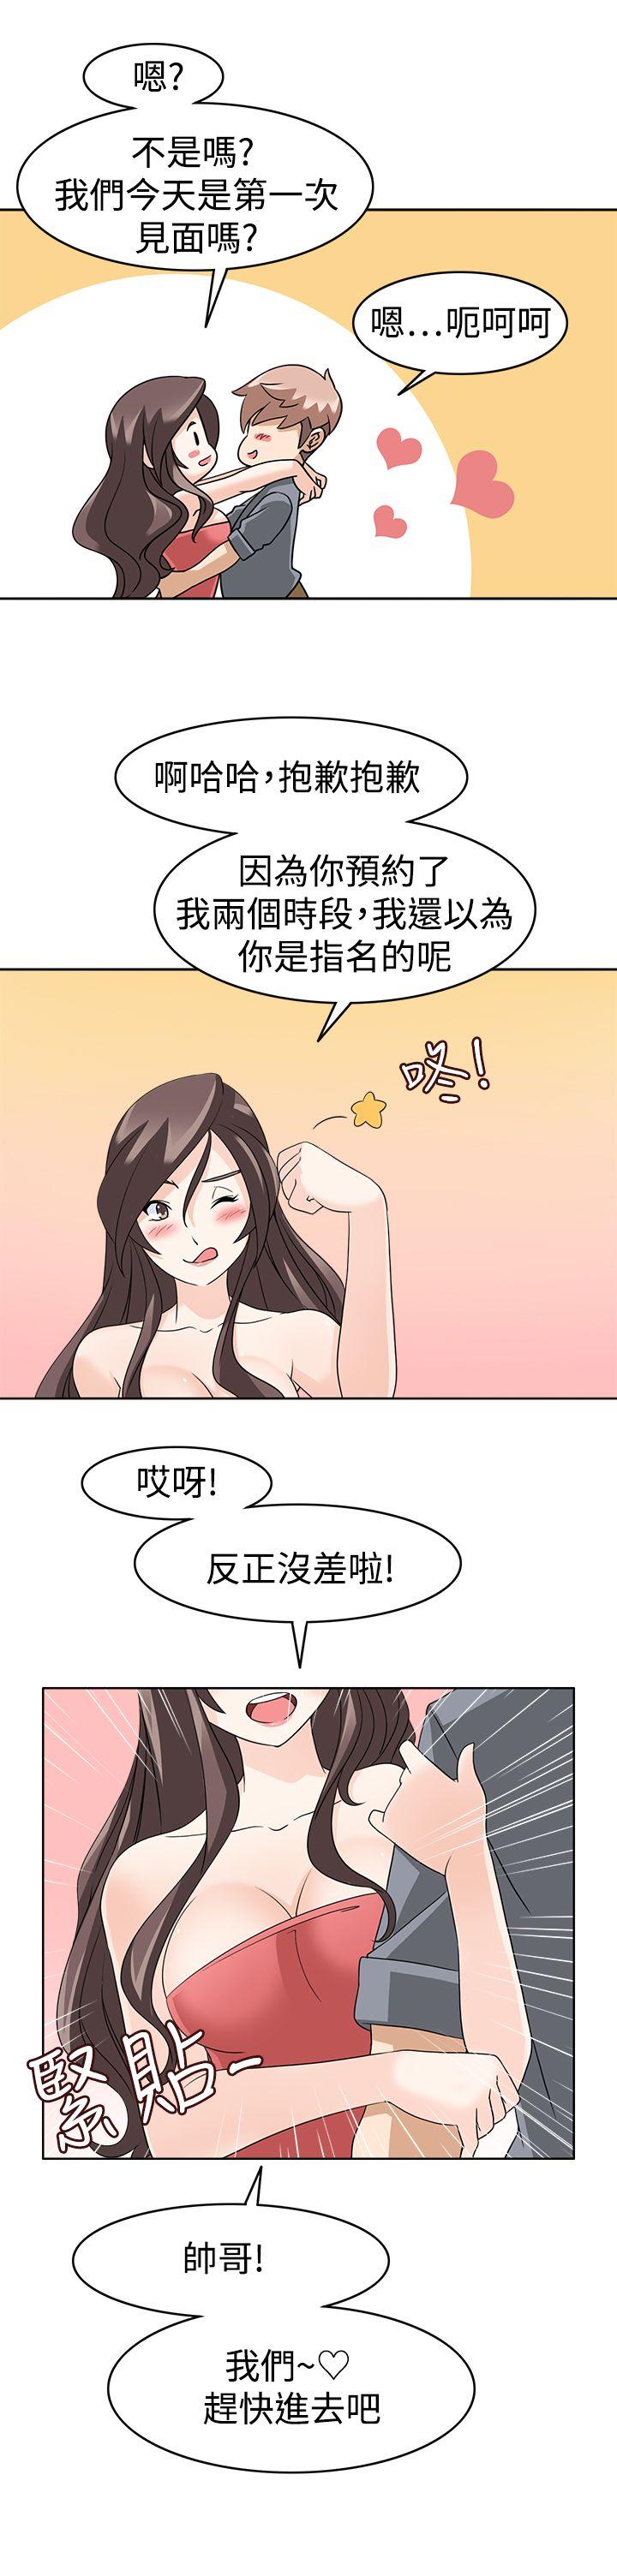 韩国污漫画 軍人的誘惑 第12话 5